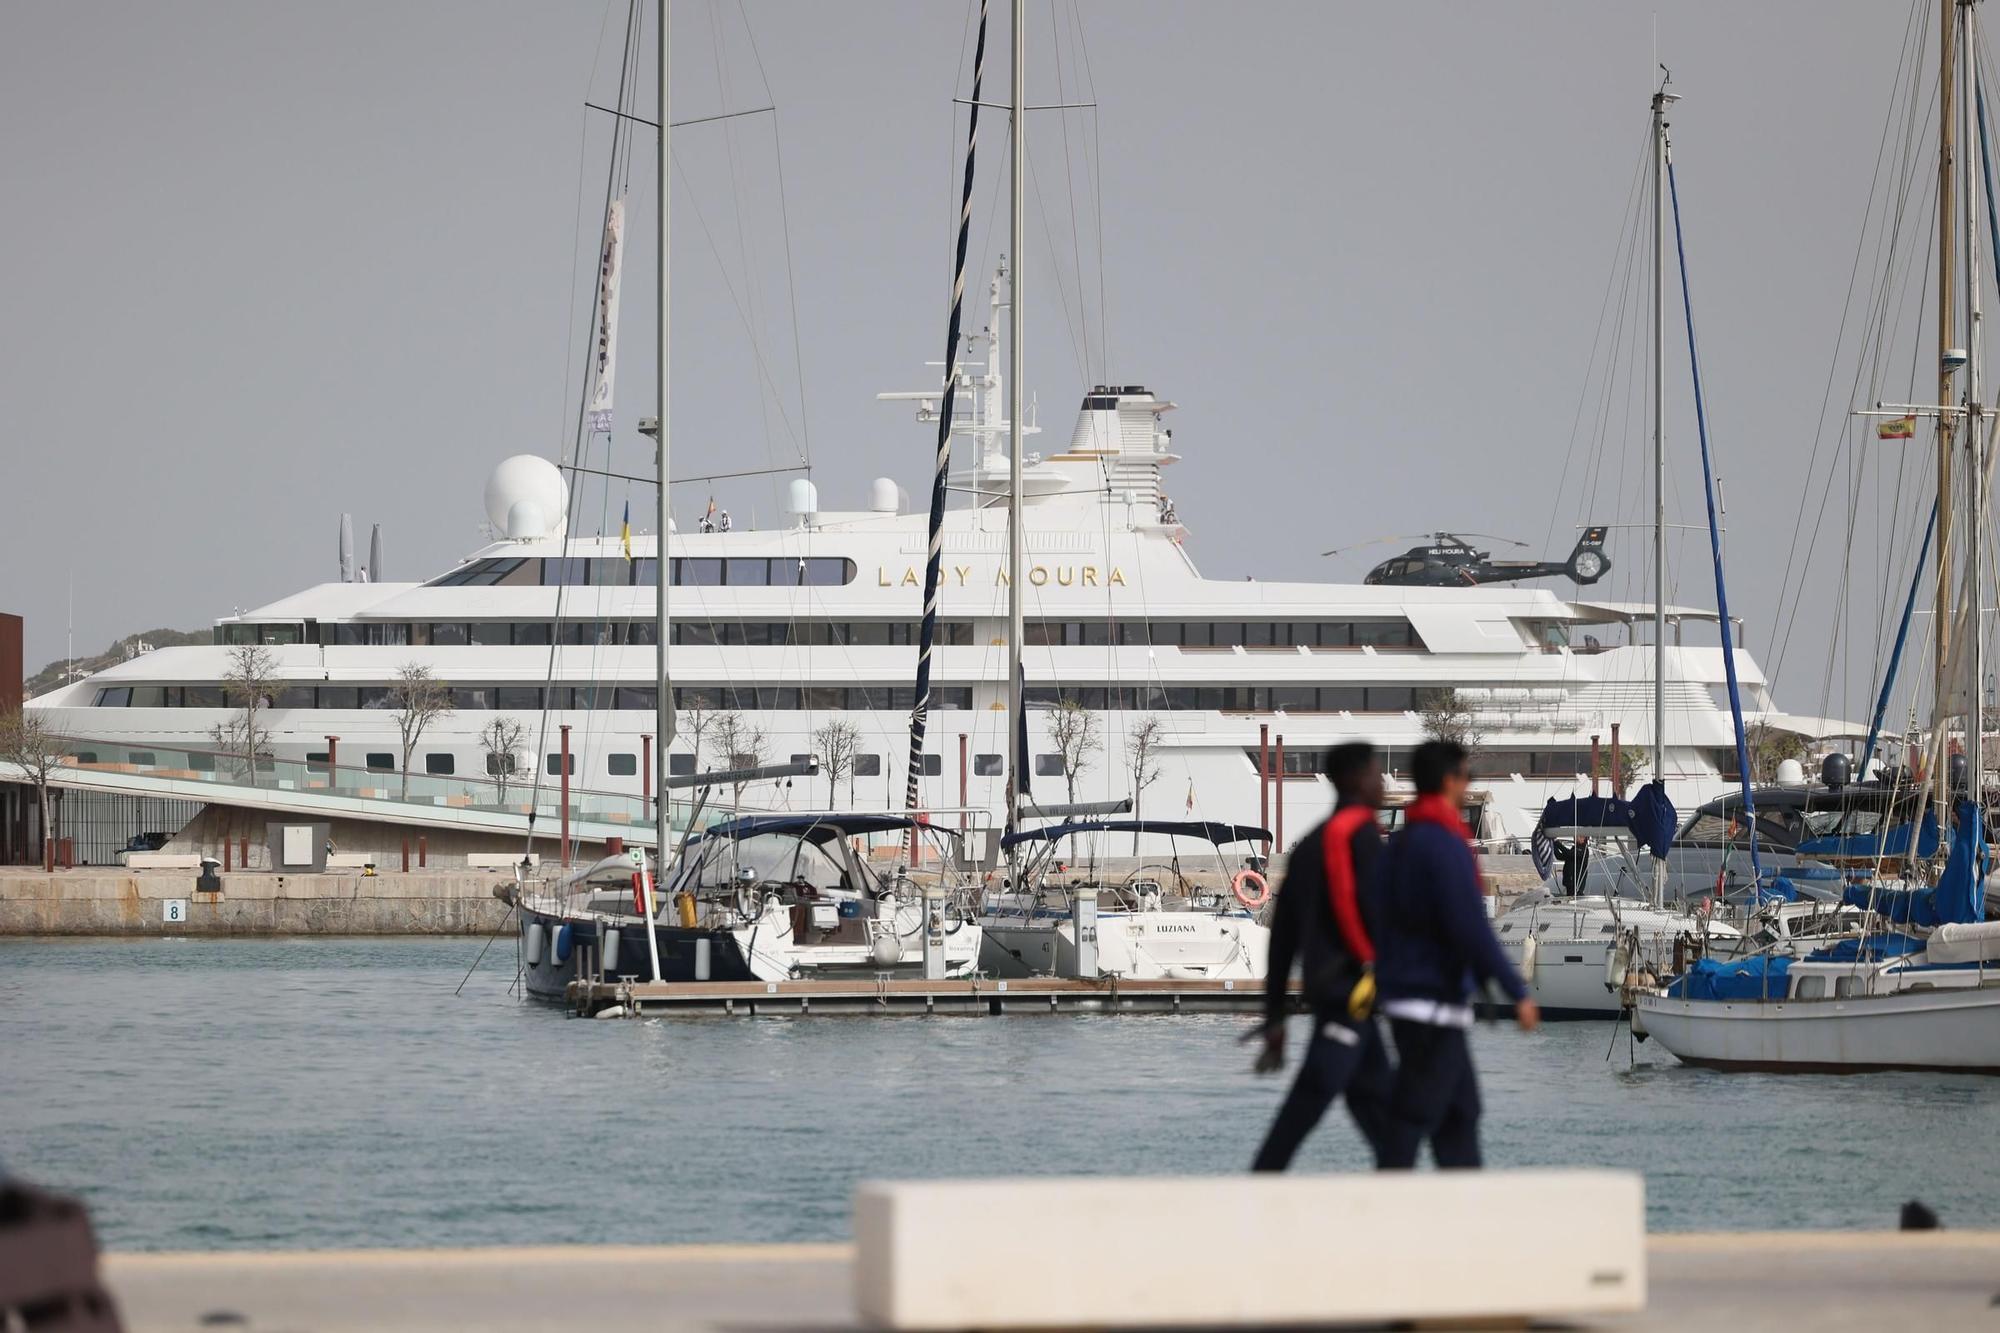 El megayate 'Lady Moura' estrena la temporada en la nueva marina del puerto de Ibiza